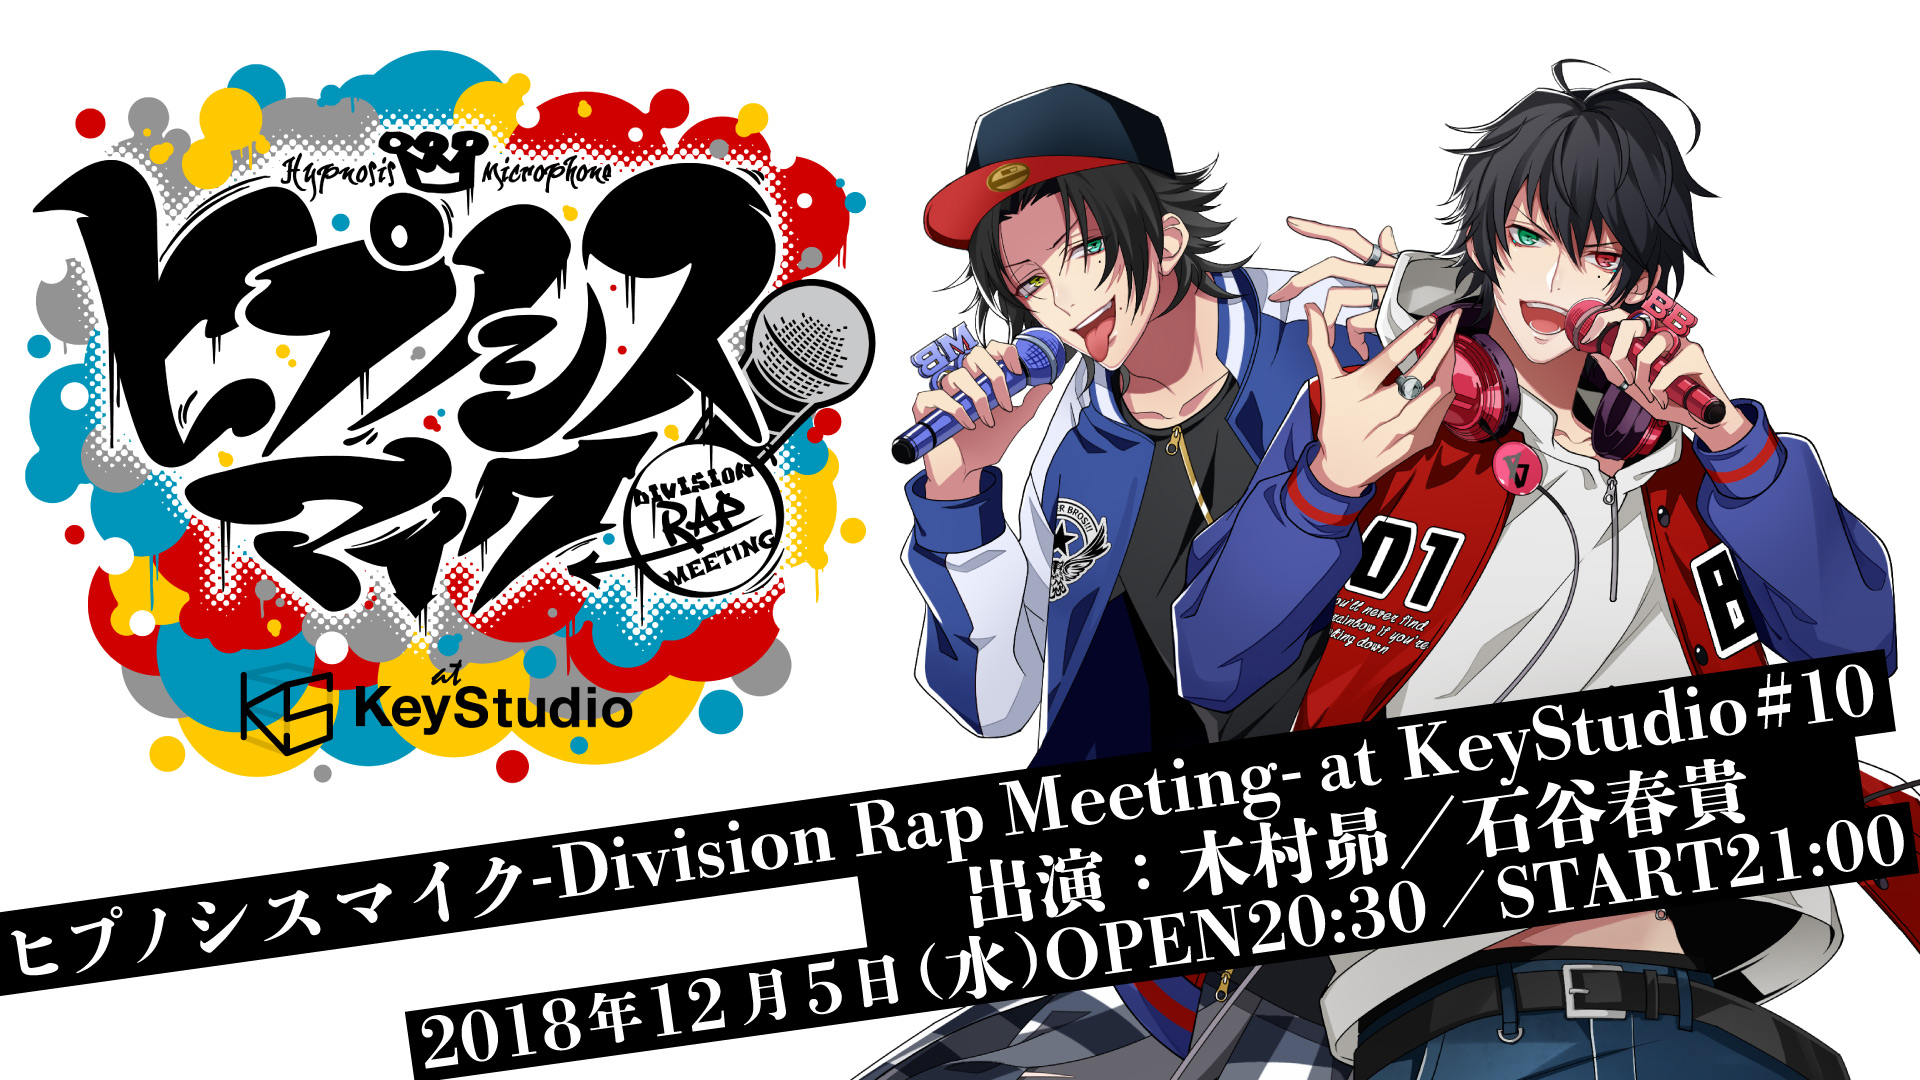 ヒプノシスマイク -Division Rap Meeting- at KeyStudio #10